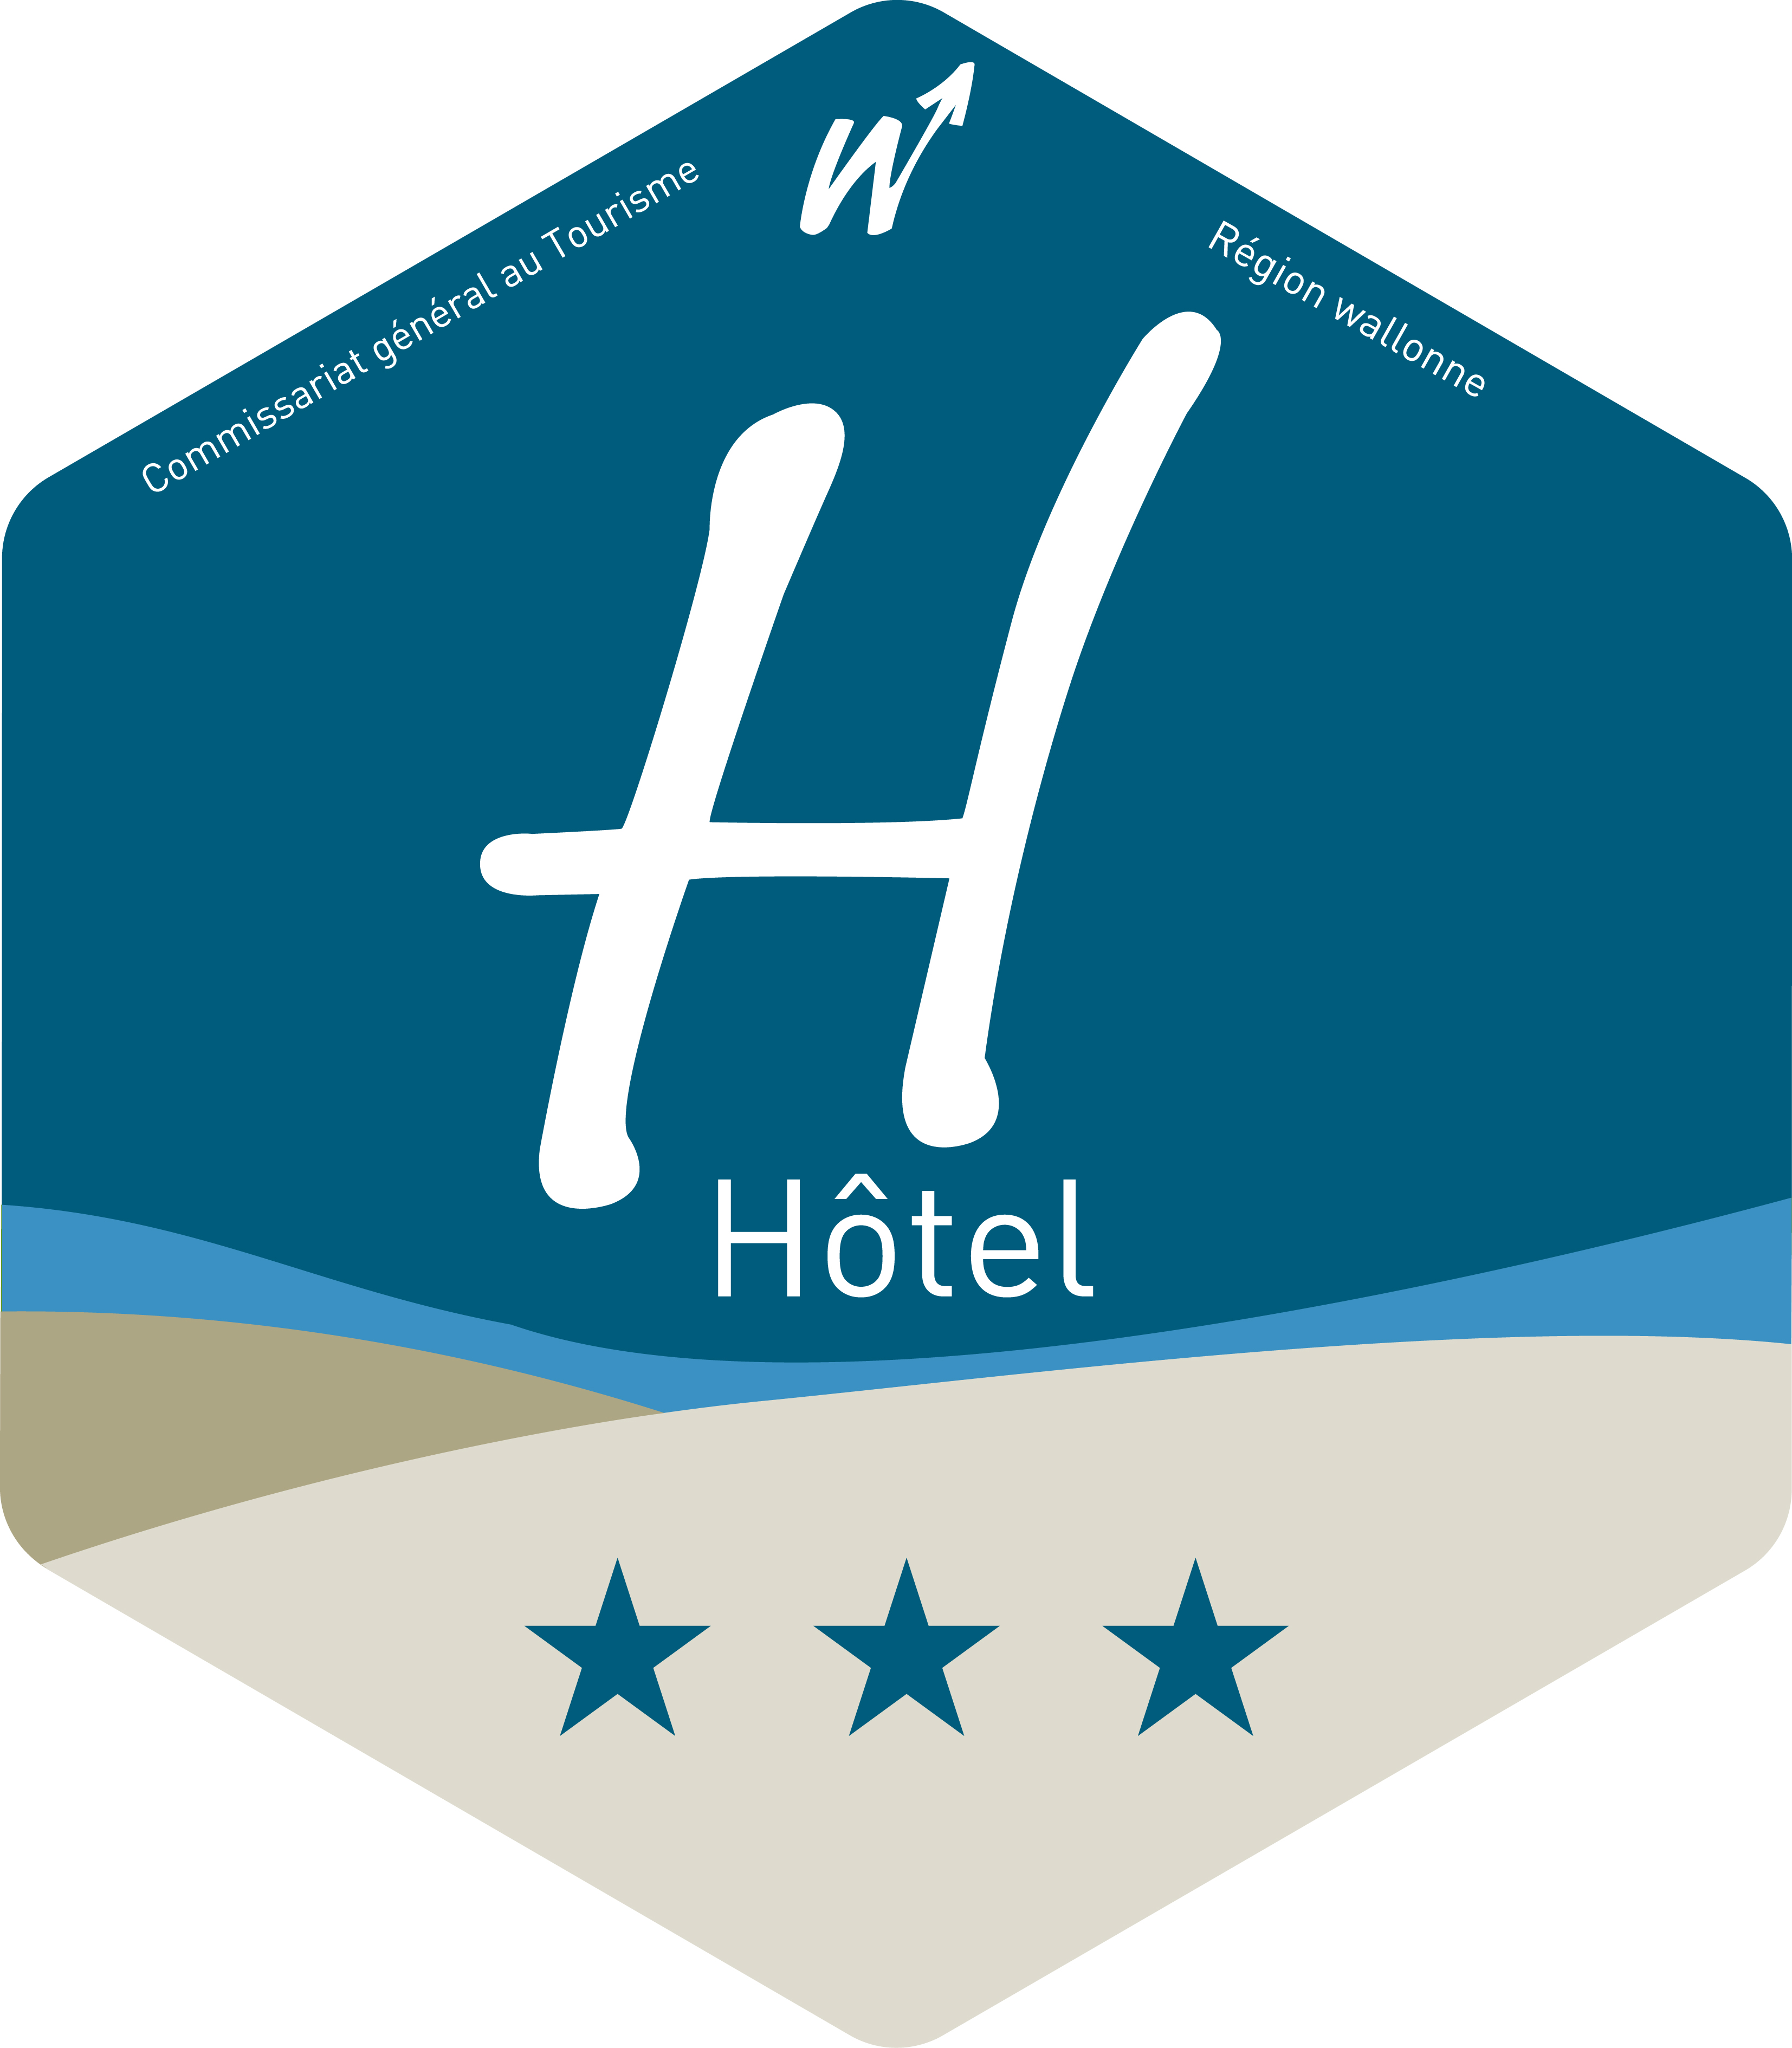 Résultat de recherche d'images pour "logo Hôtel Région wallonne"